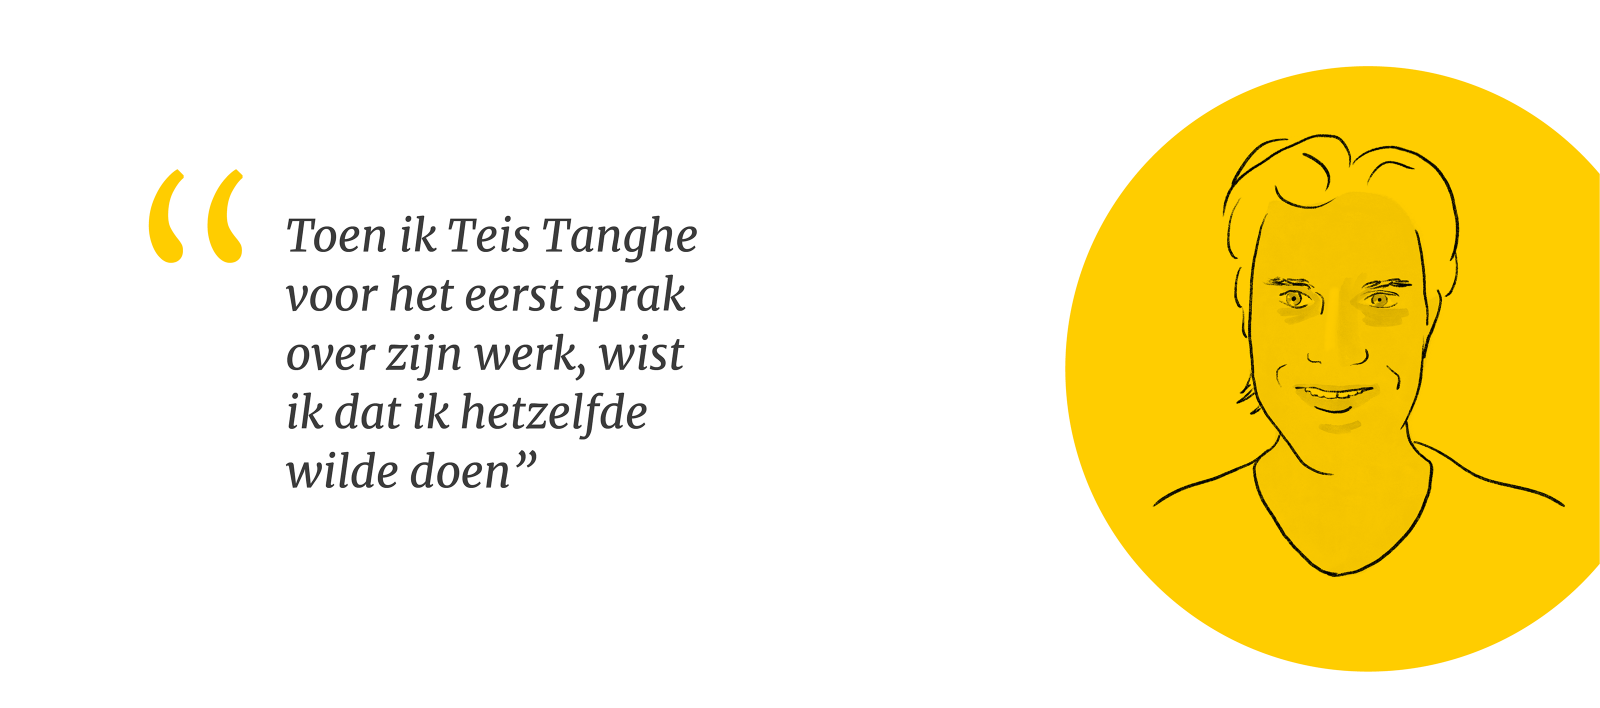 Illustratie van Teis Tanghe met quote: Toen ik Teis Tanghe voor het eerst sprak over zijn werk, wist ik dat ik hetzelfde wilde doen